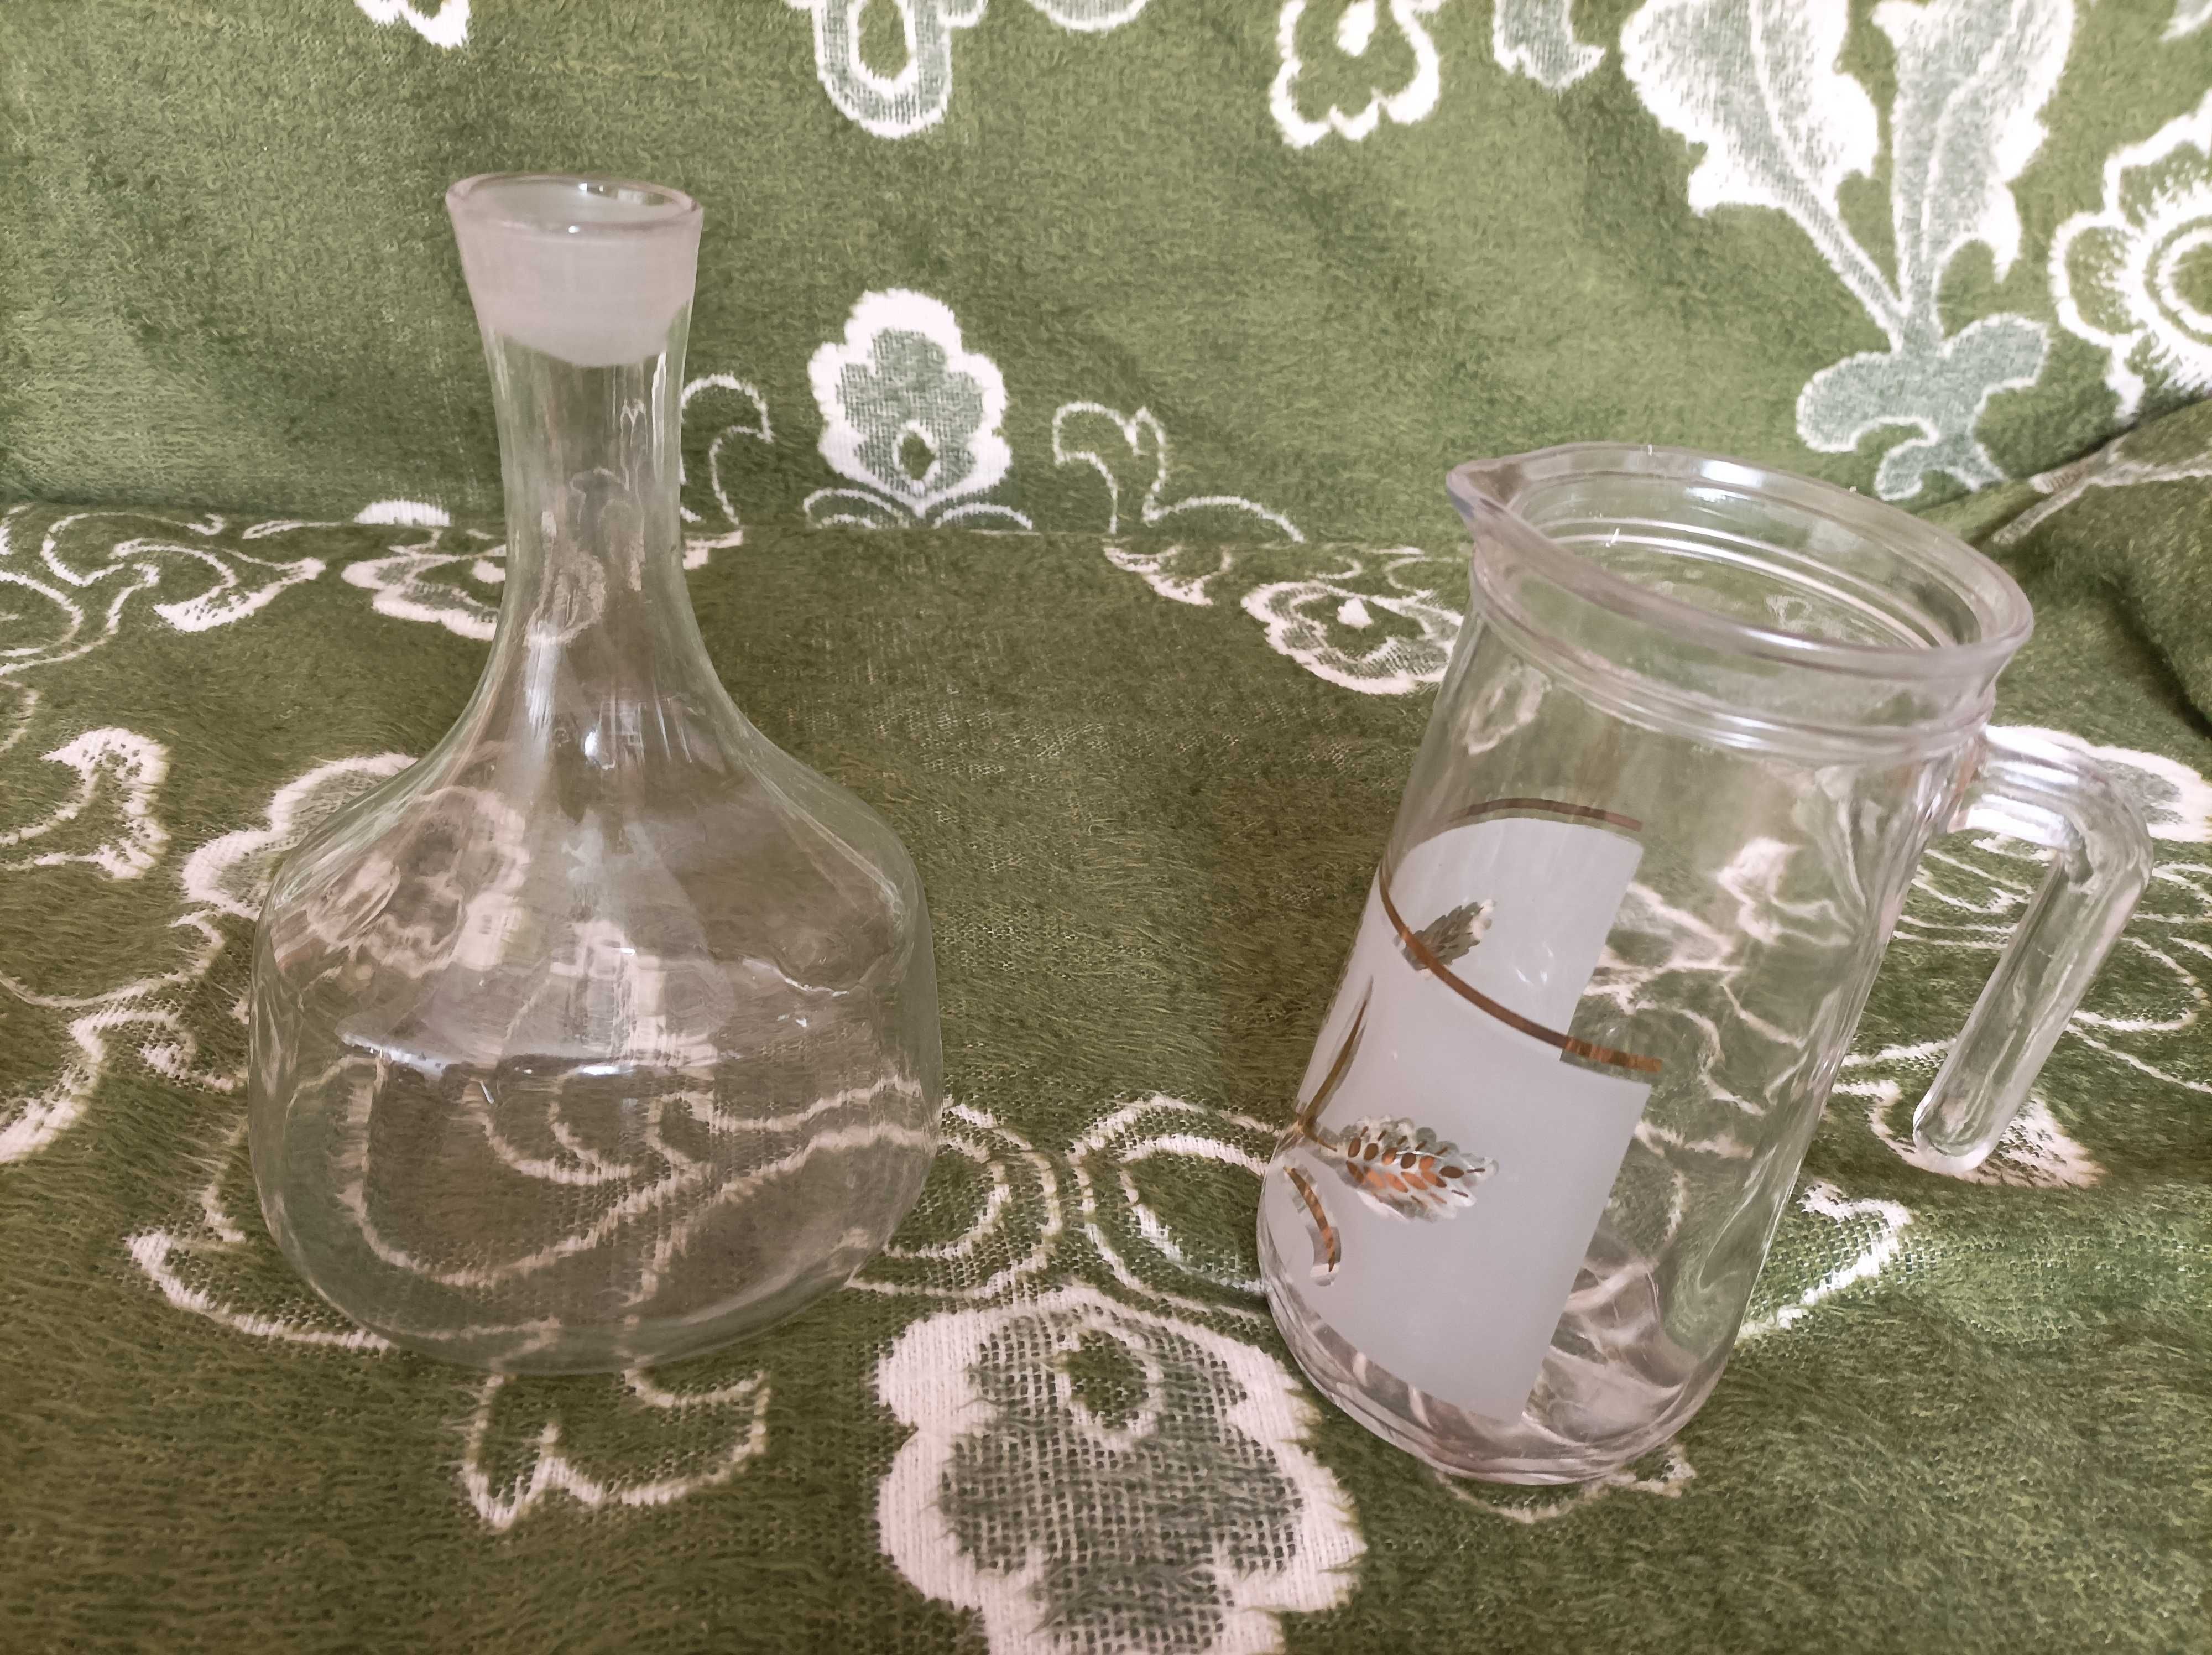 Продам вазы- хрусталь,стекло,керамика,пепельница и др.